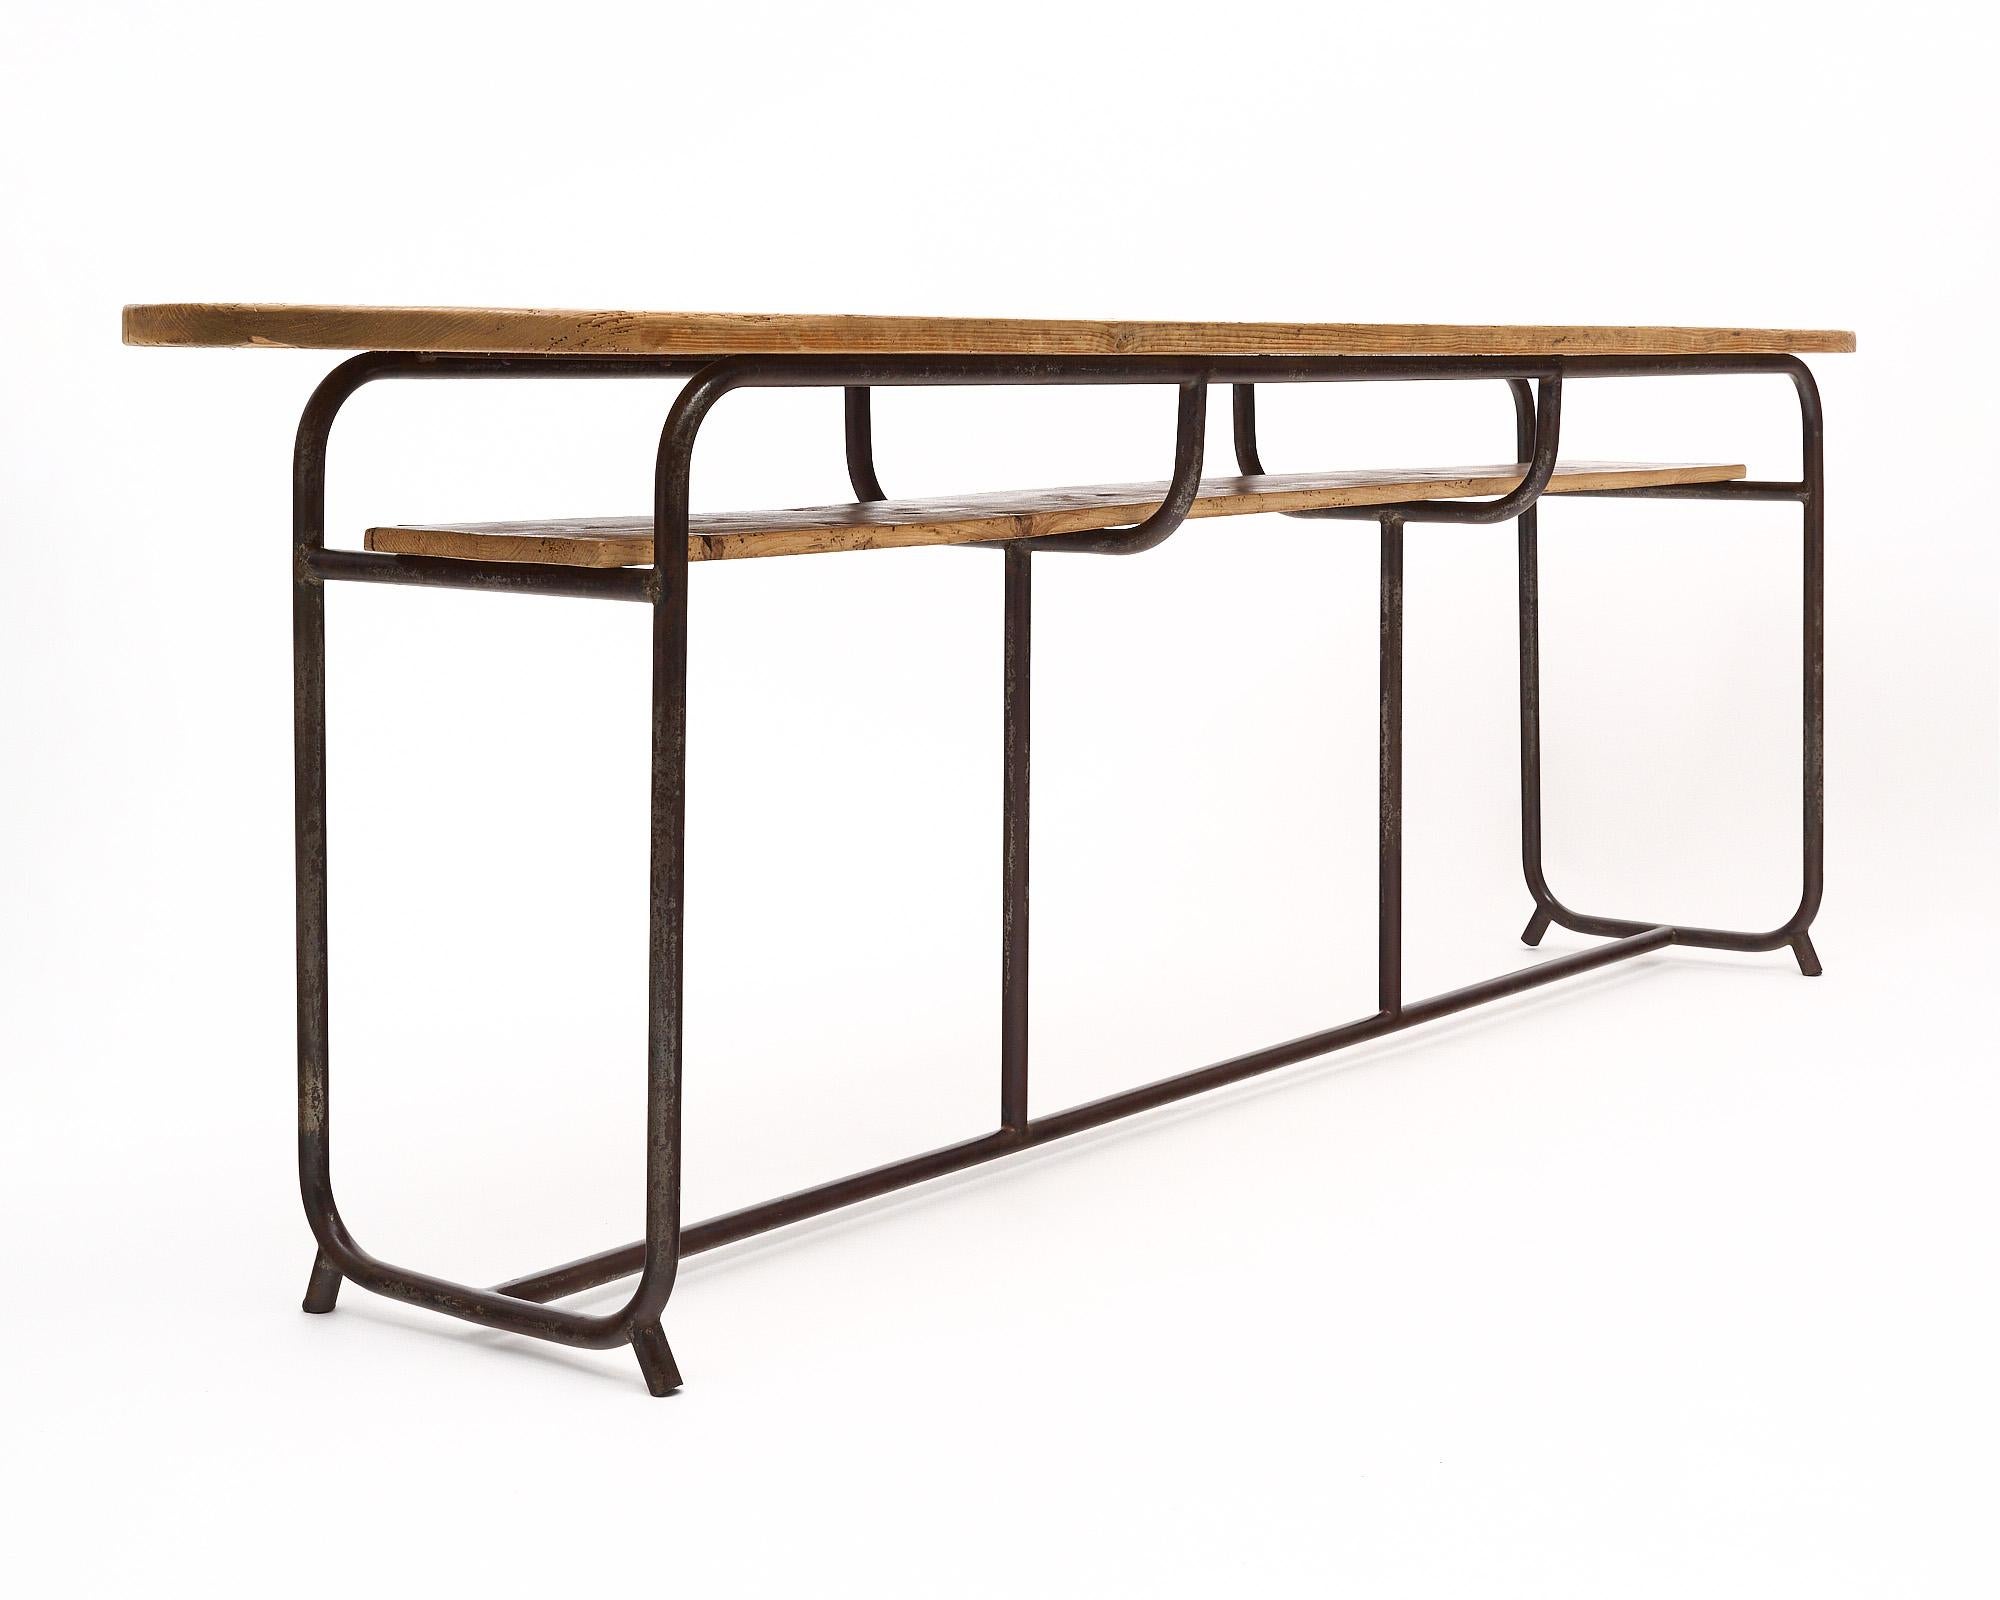 Table console française de style industriel. La structure est en fer et comporte un plateau en bois et une étagère en bois en dessous pour plus de fonctionnalité.